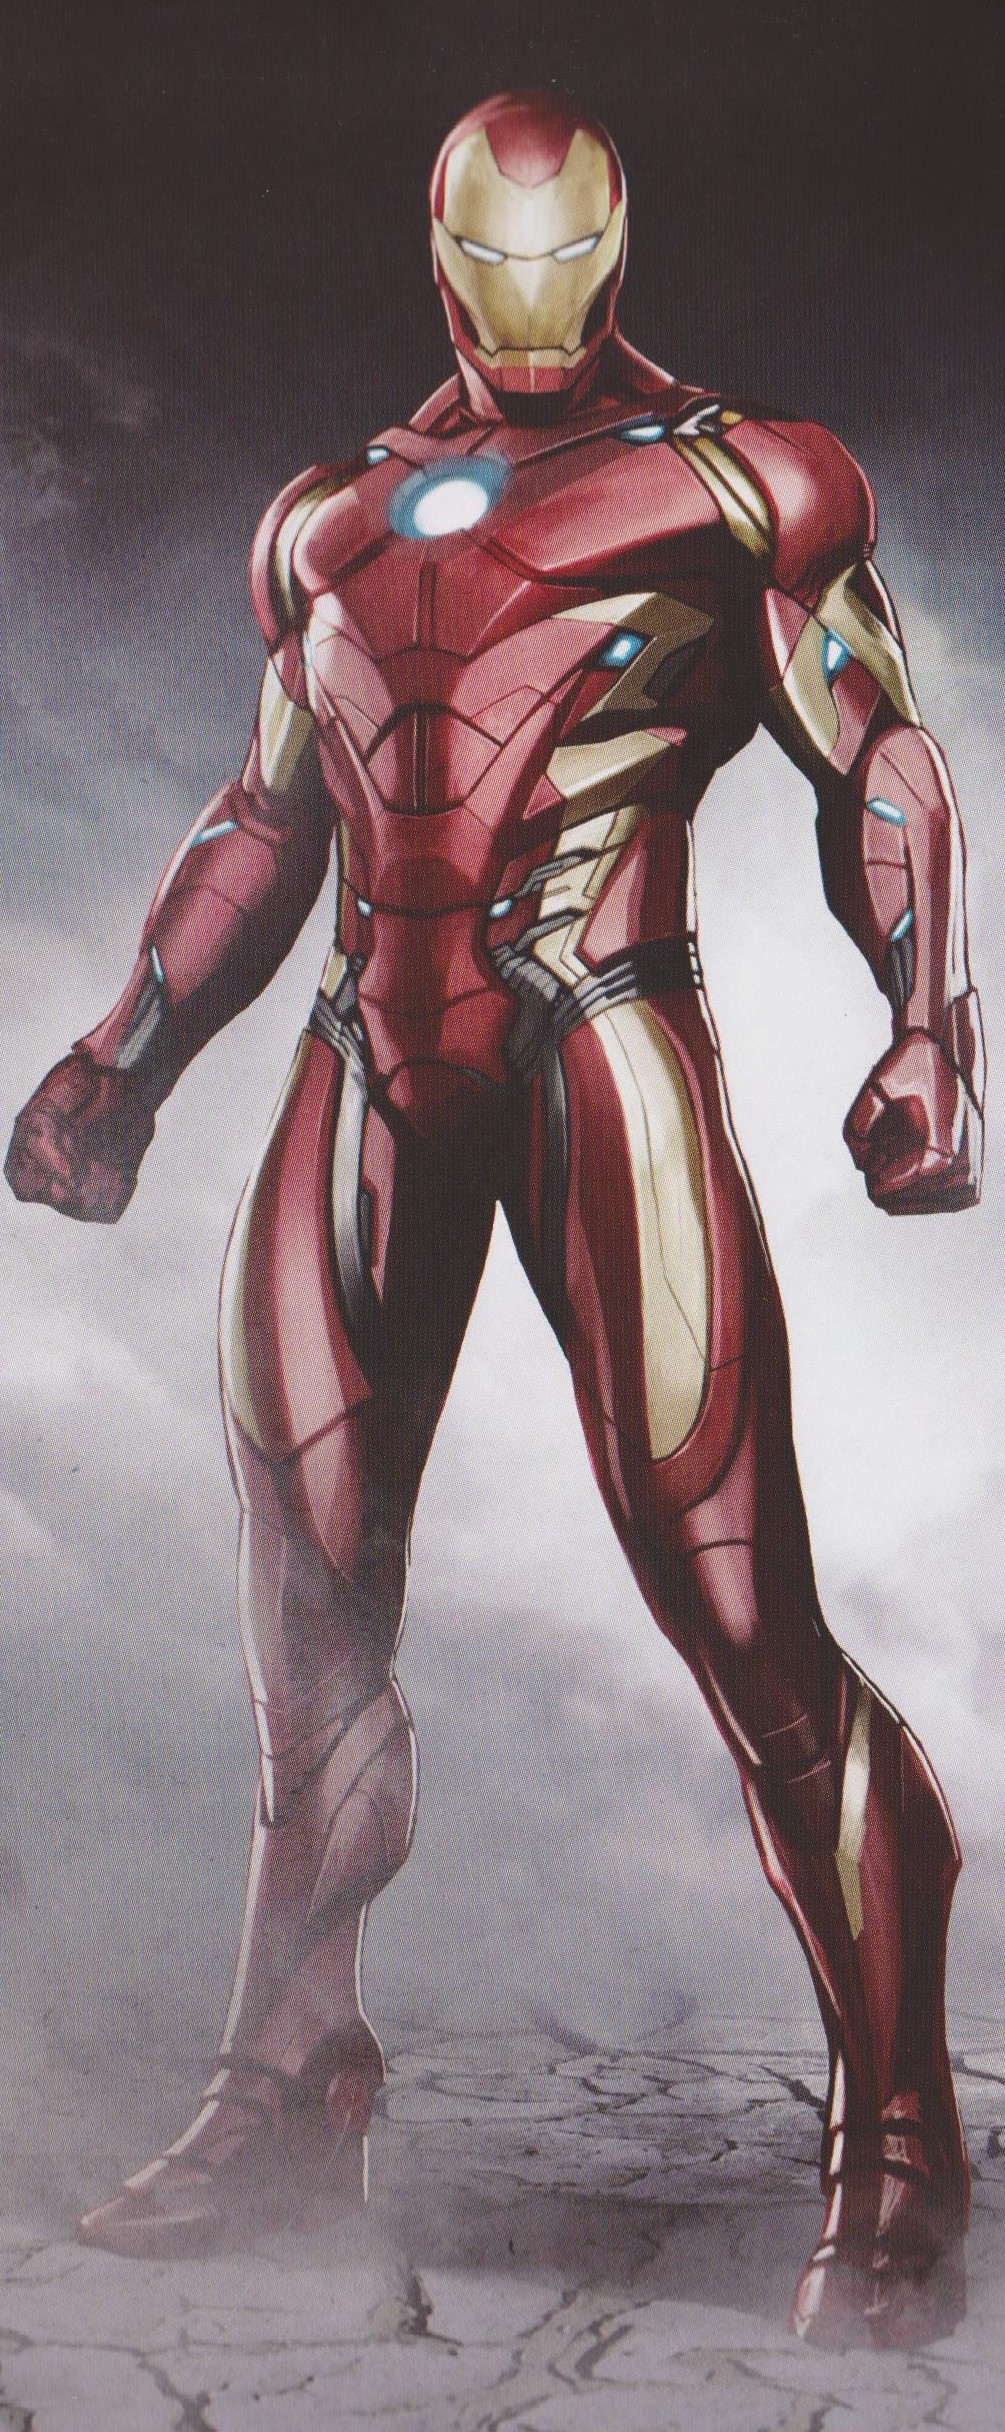 Image - Avengers Infinity War Iron Man concept art 5.jpg ...